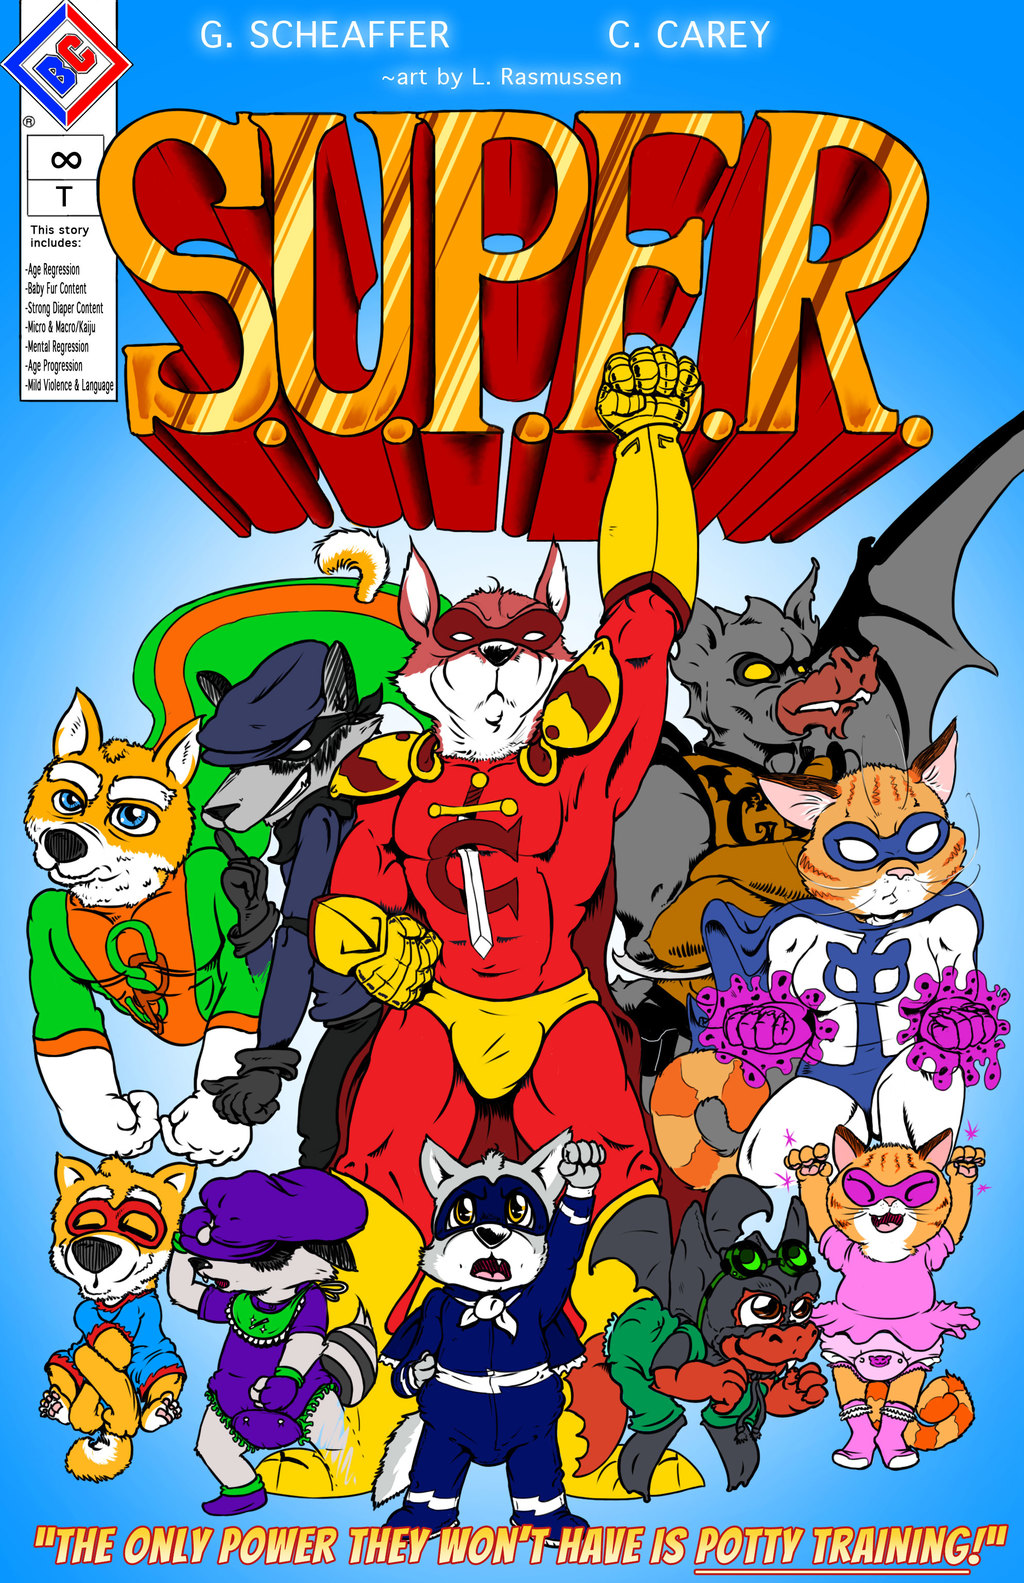 "S.U.P.E.R." Official Comprehensive Comic Cover